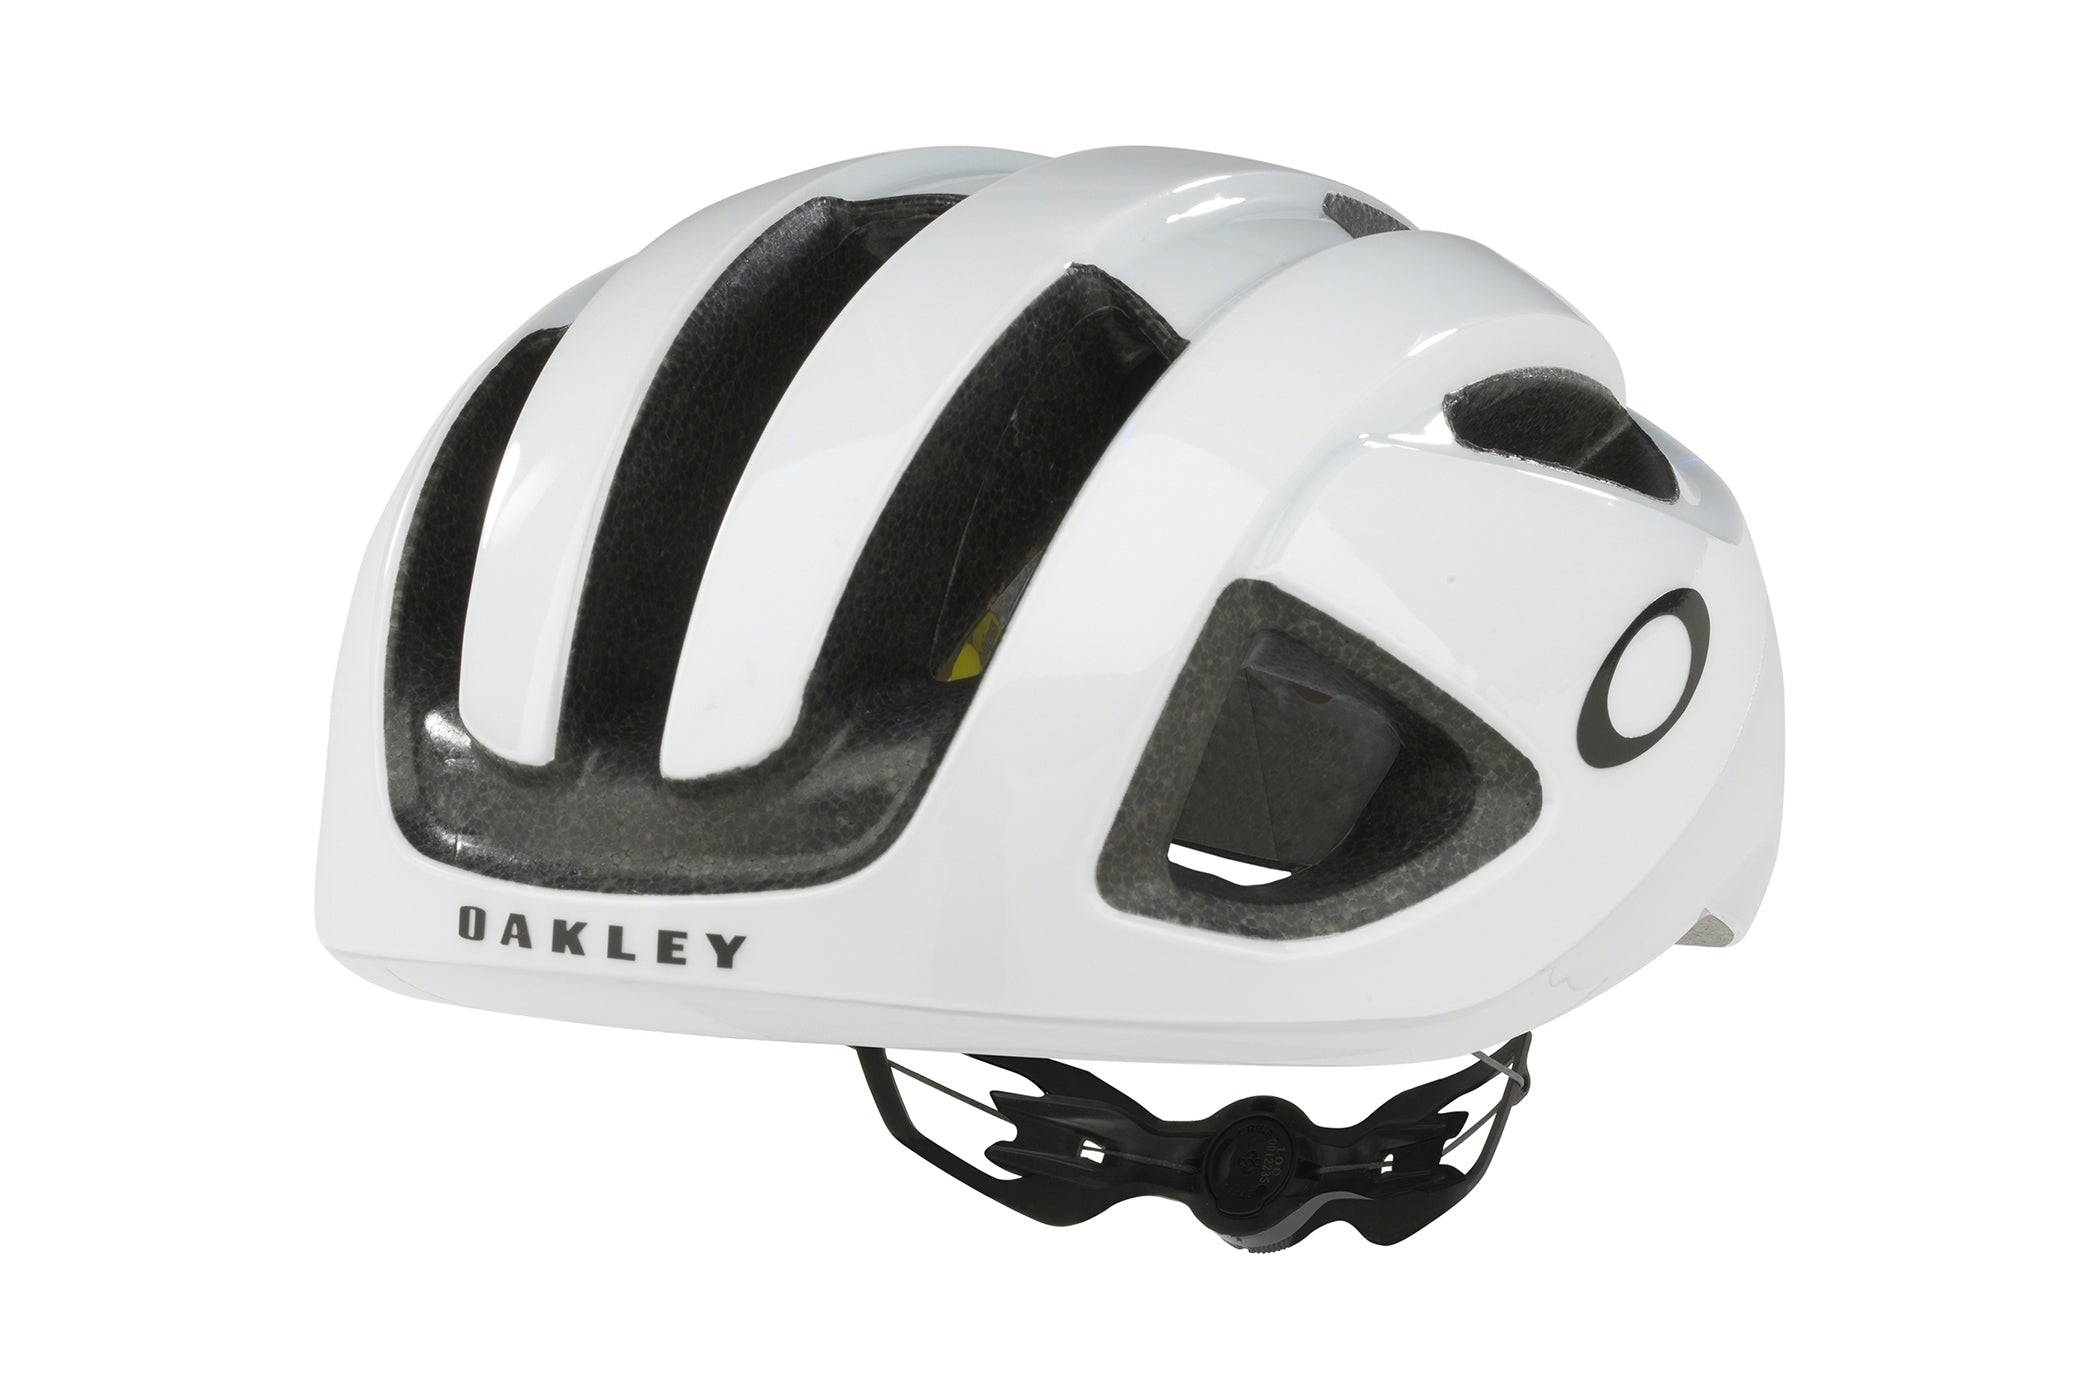 Oakley ARO3 Bike Helmet White | The Pro's Closet